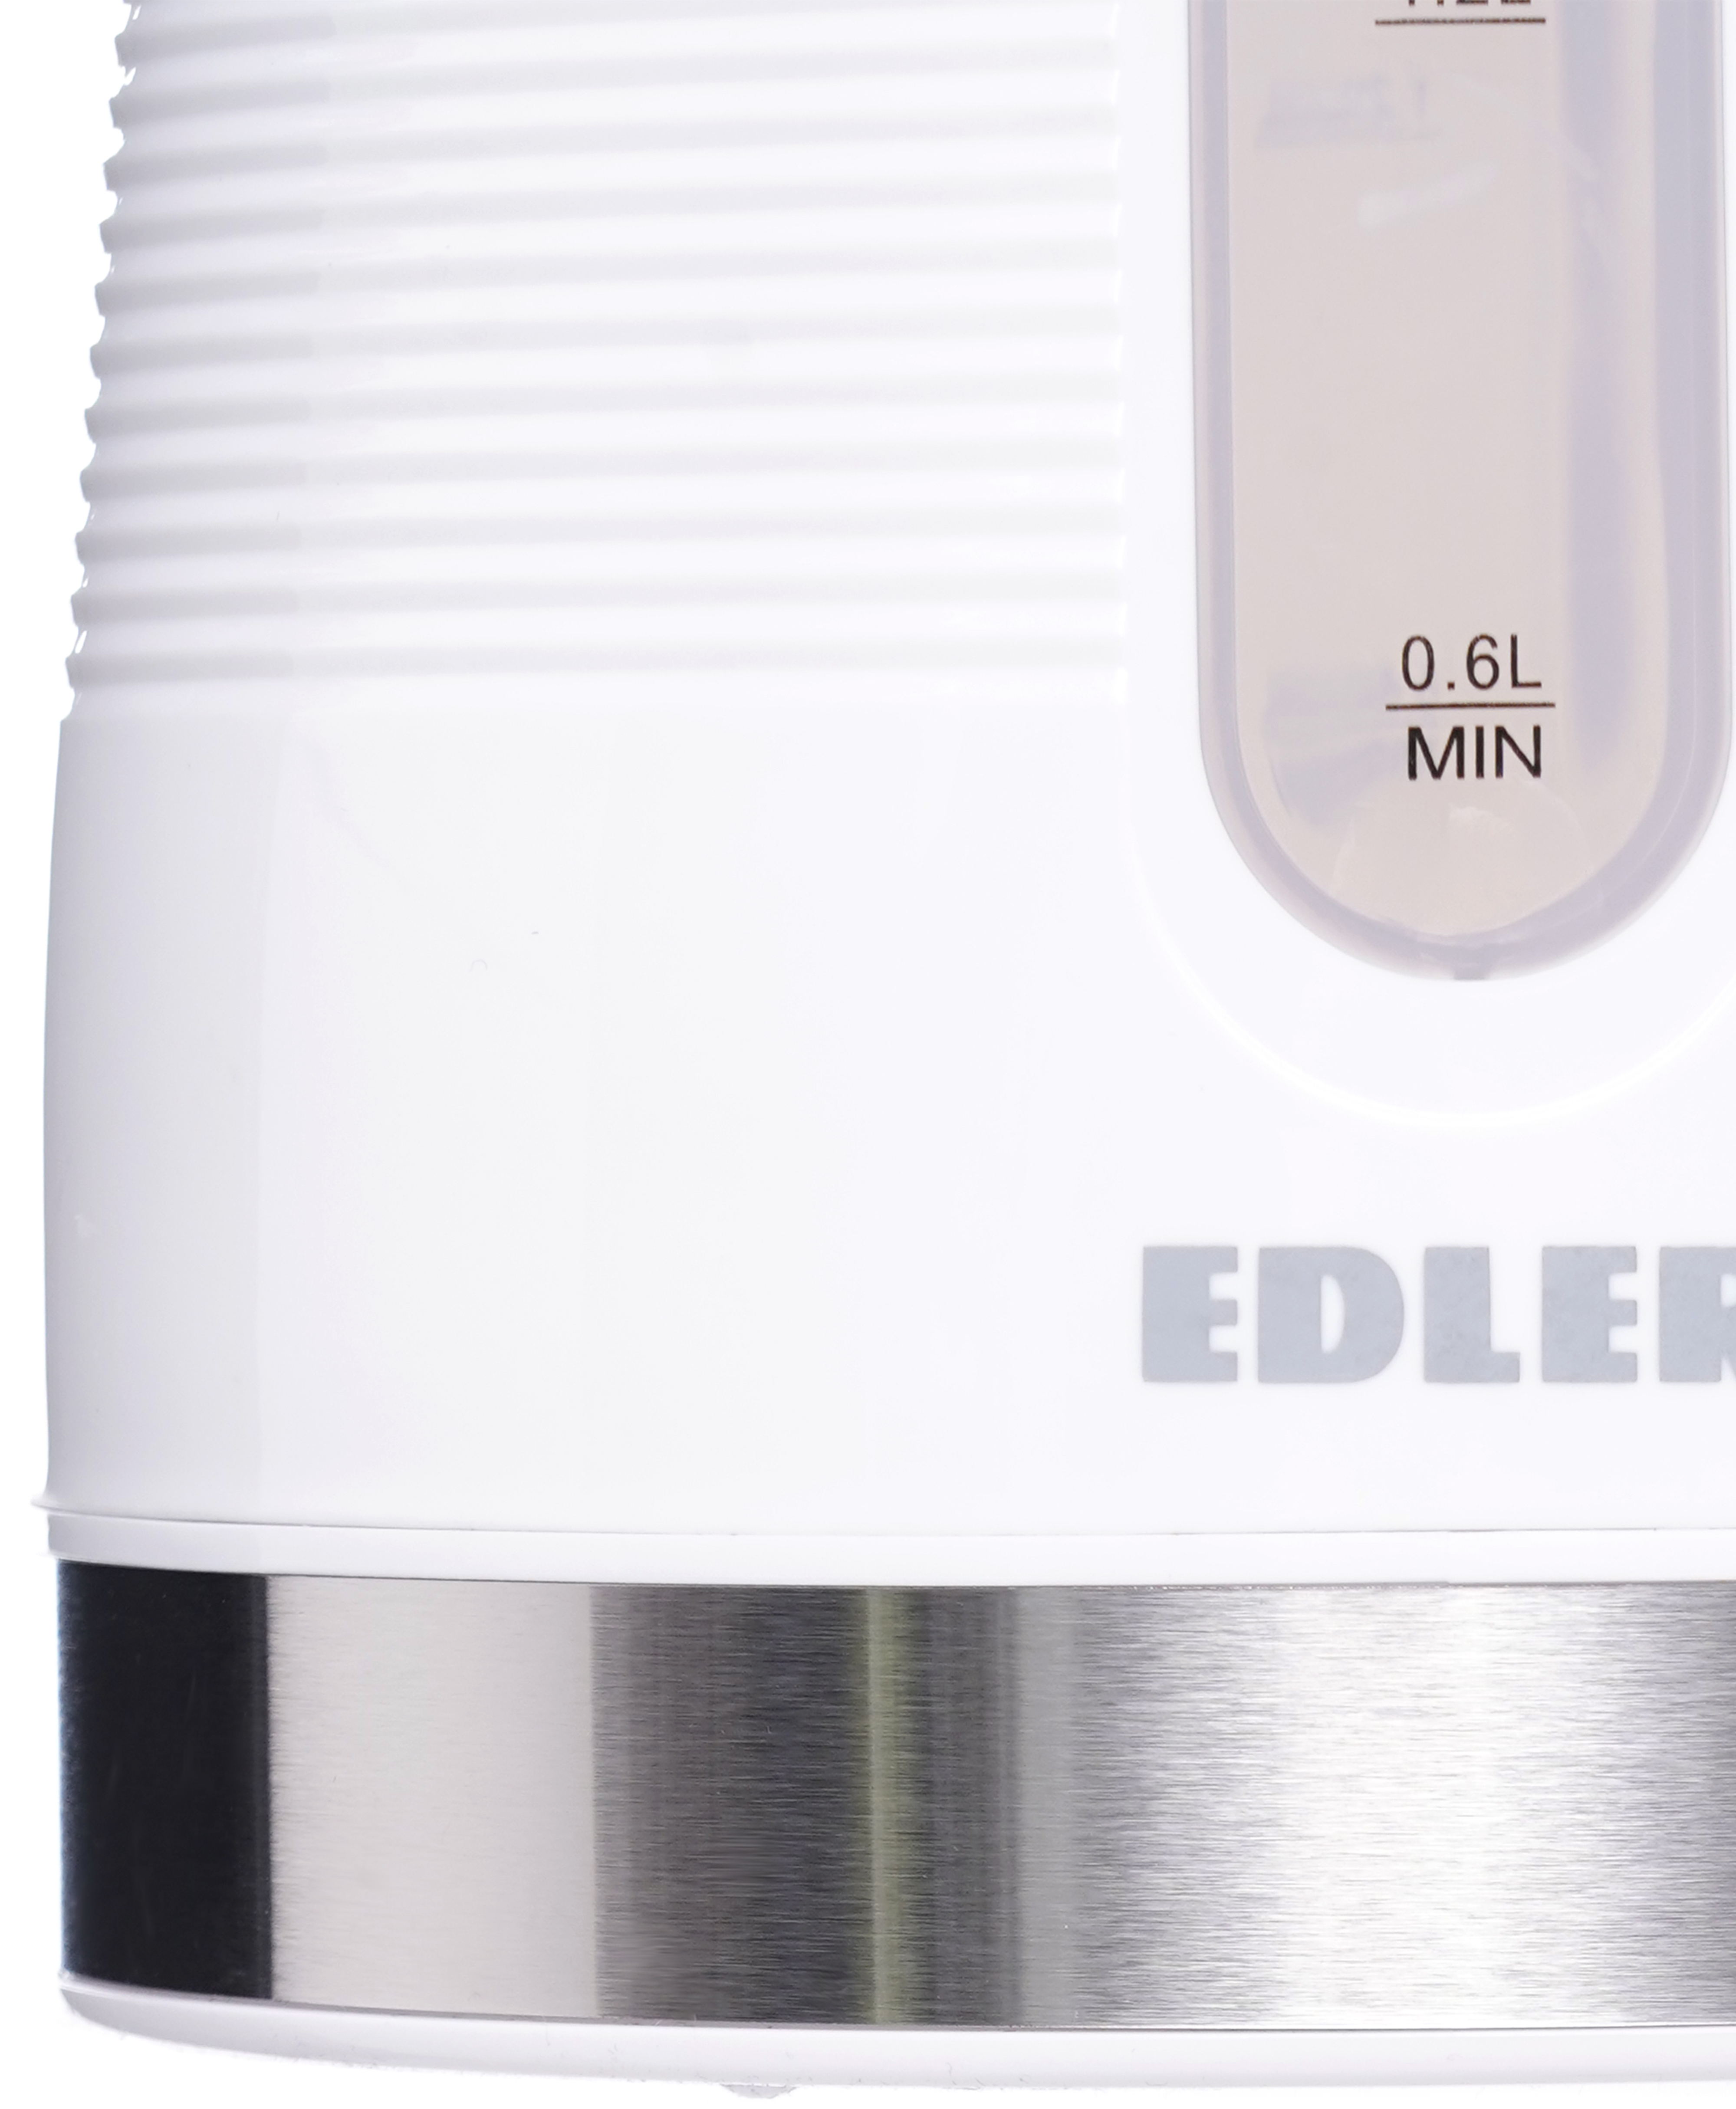 Электрочайник Edler EK4525 white обзор - фото 8